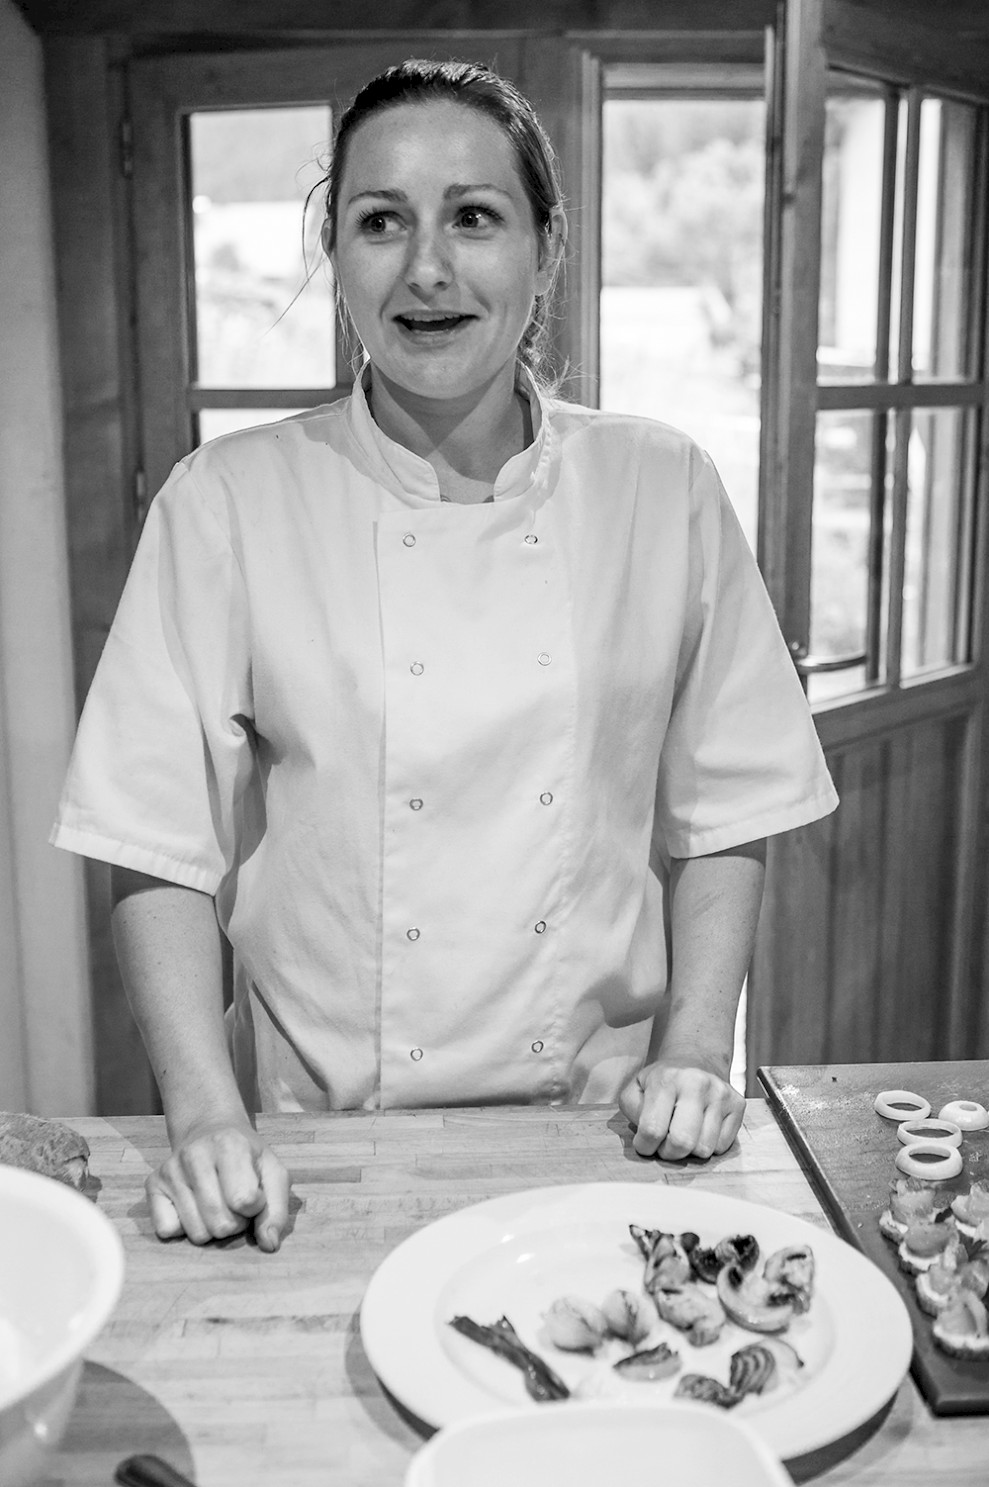 Lucie Cambridge, Professional Chef